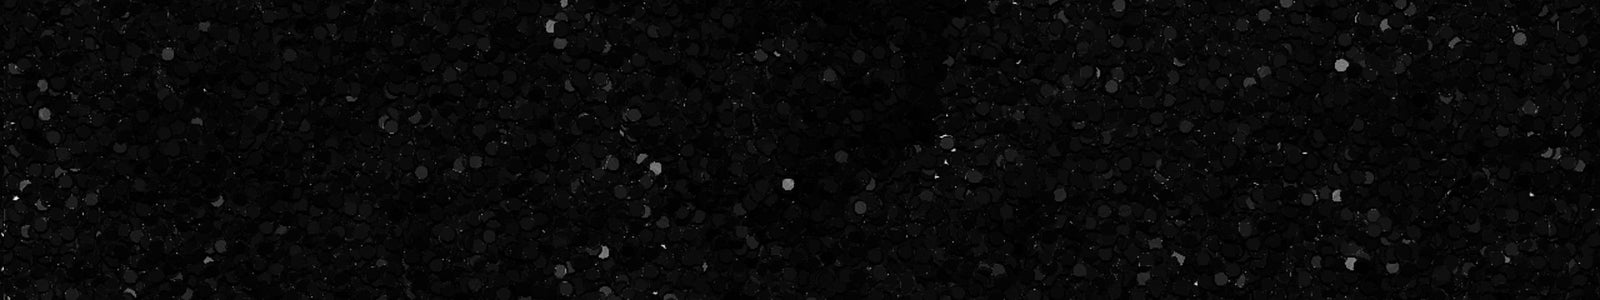 PENGEMS Black Crystal Background